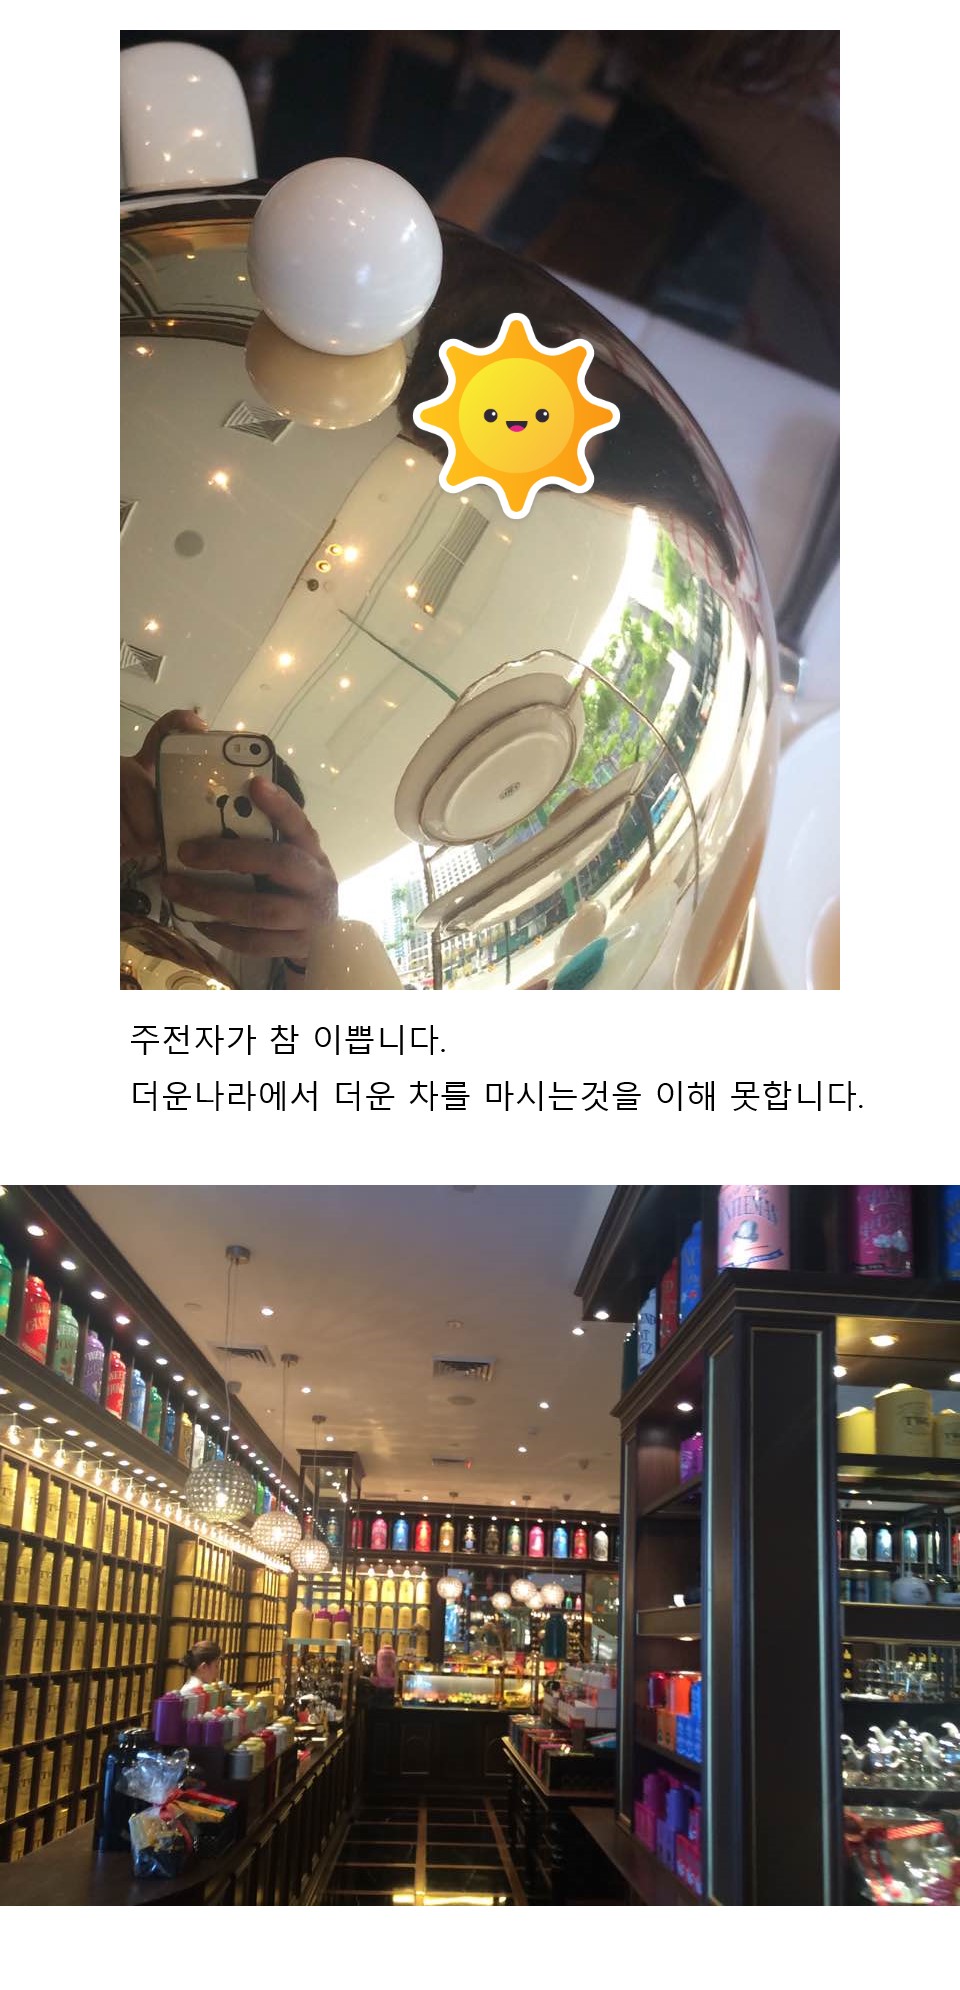 김뿡의 해외라이프 - 마닐라특별편(2) - 호텔 부페(4)